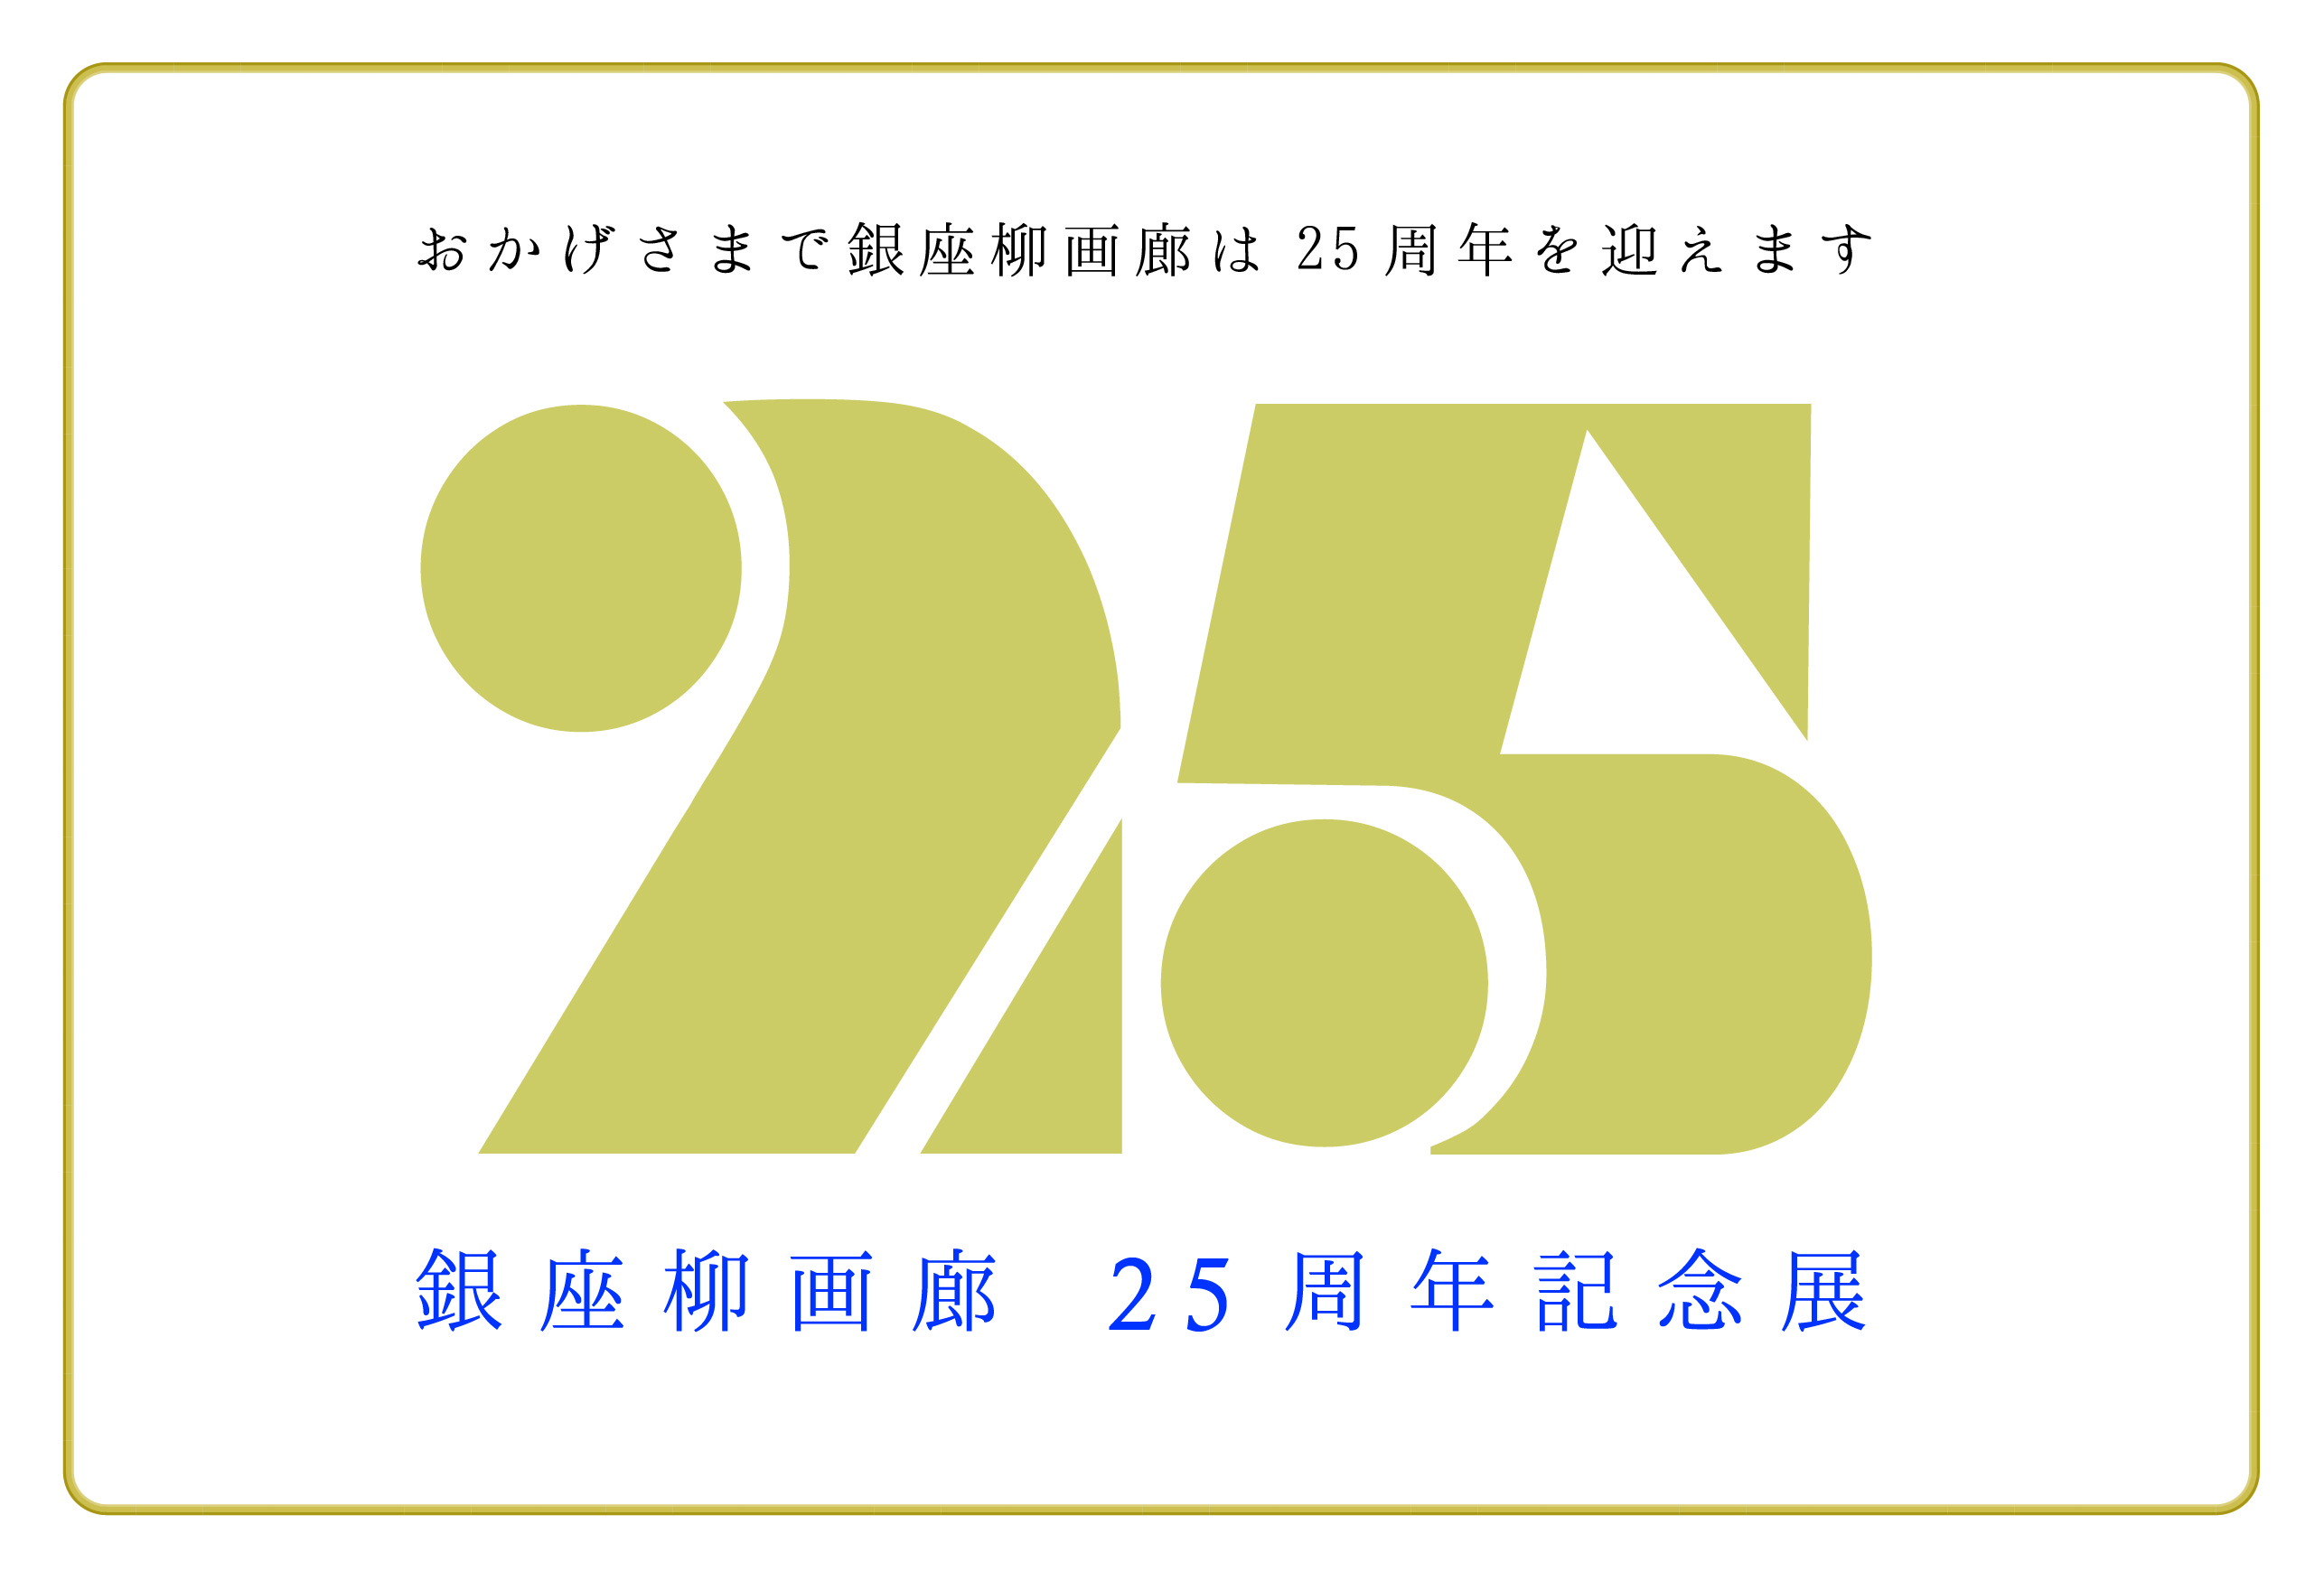 25周年記念展-01.jpg